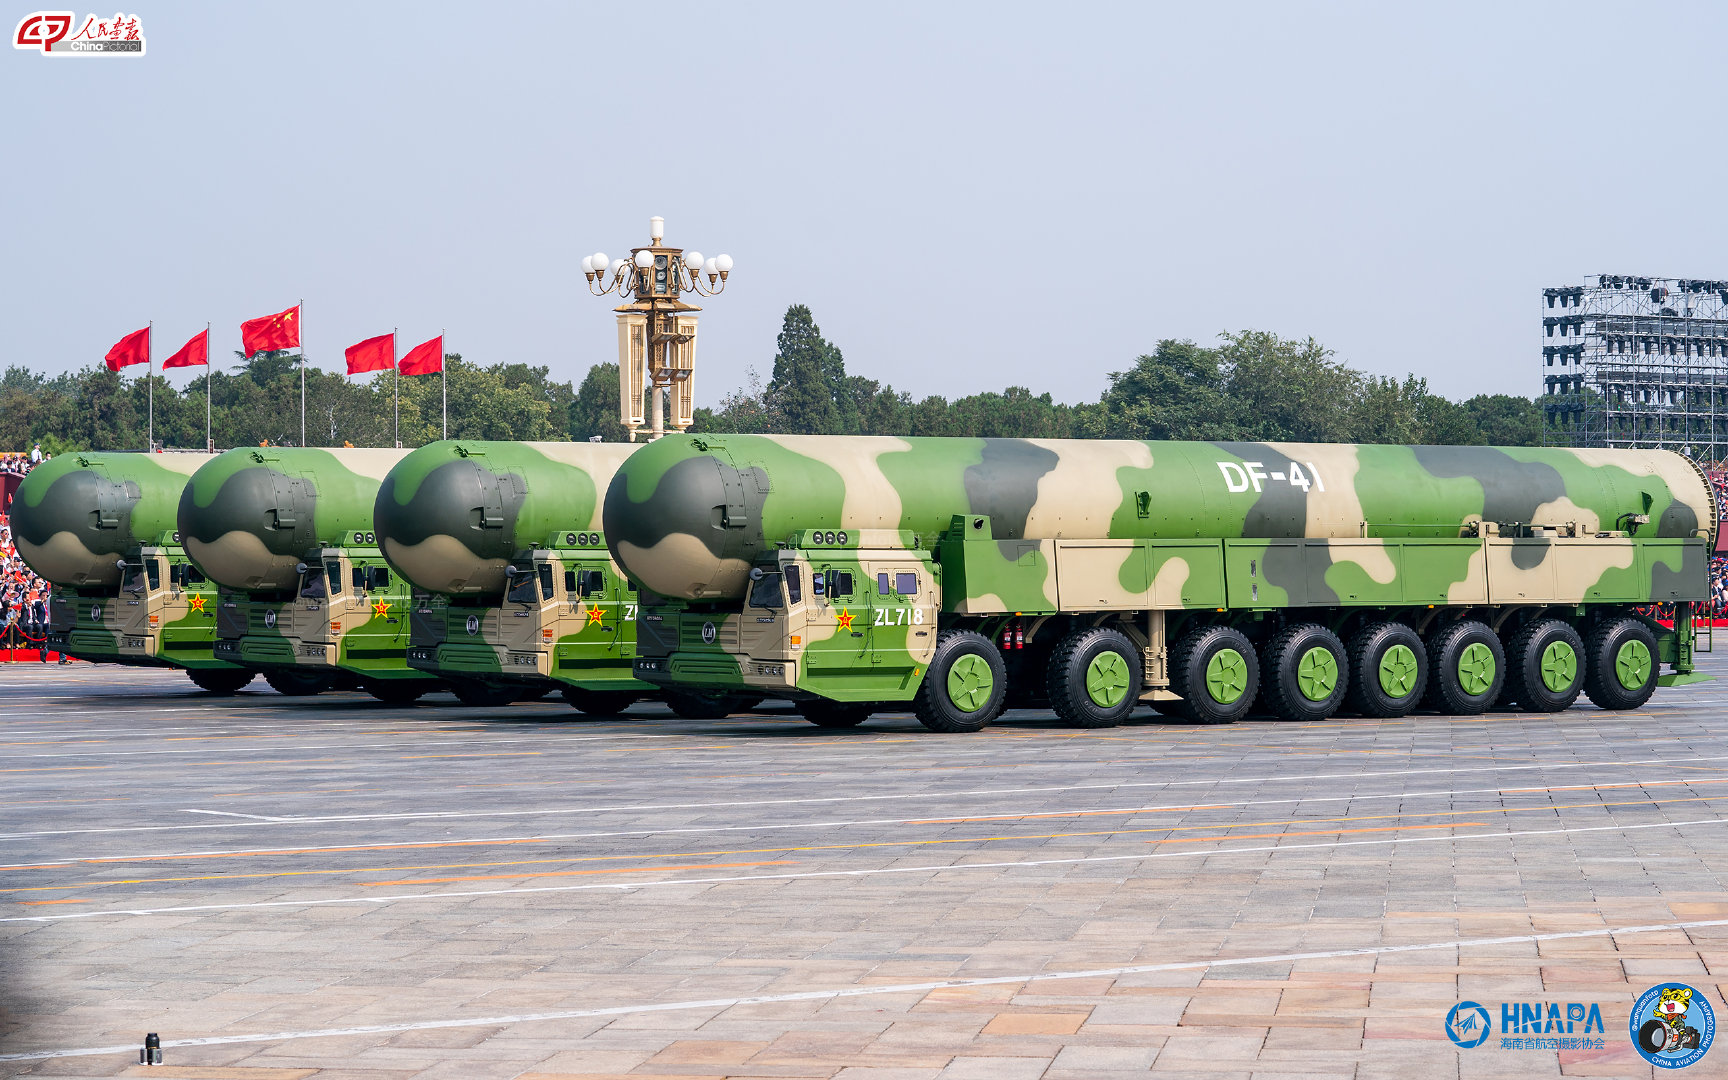 zzd 正文与东风-41,东风-31等陆基机动发射,固体燃料的洲际导弹不同